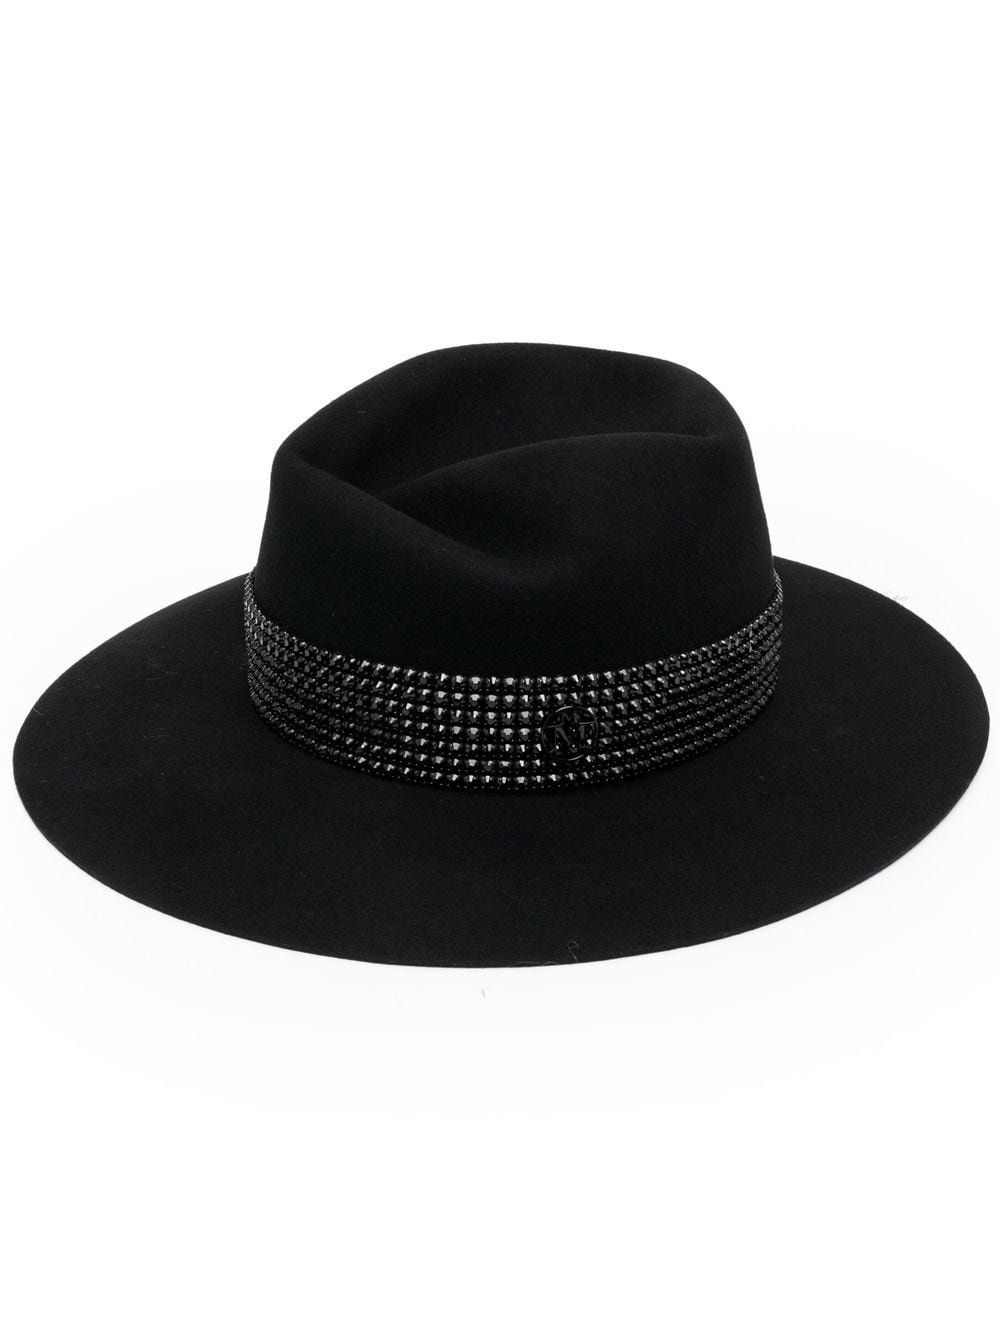 Virginie strass belt on wool felt fedora hat